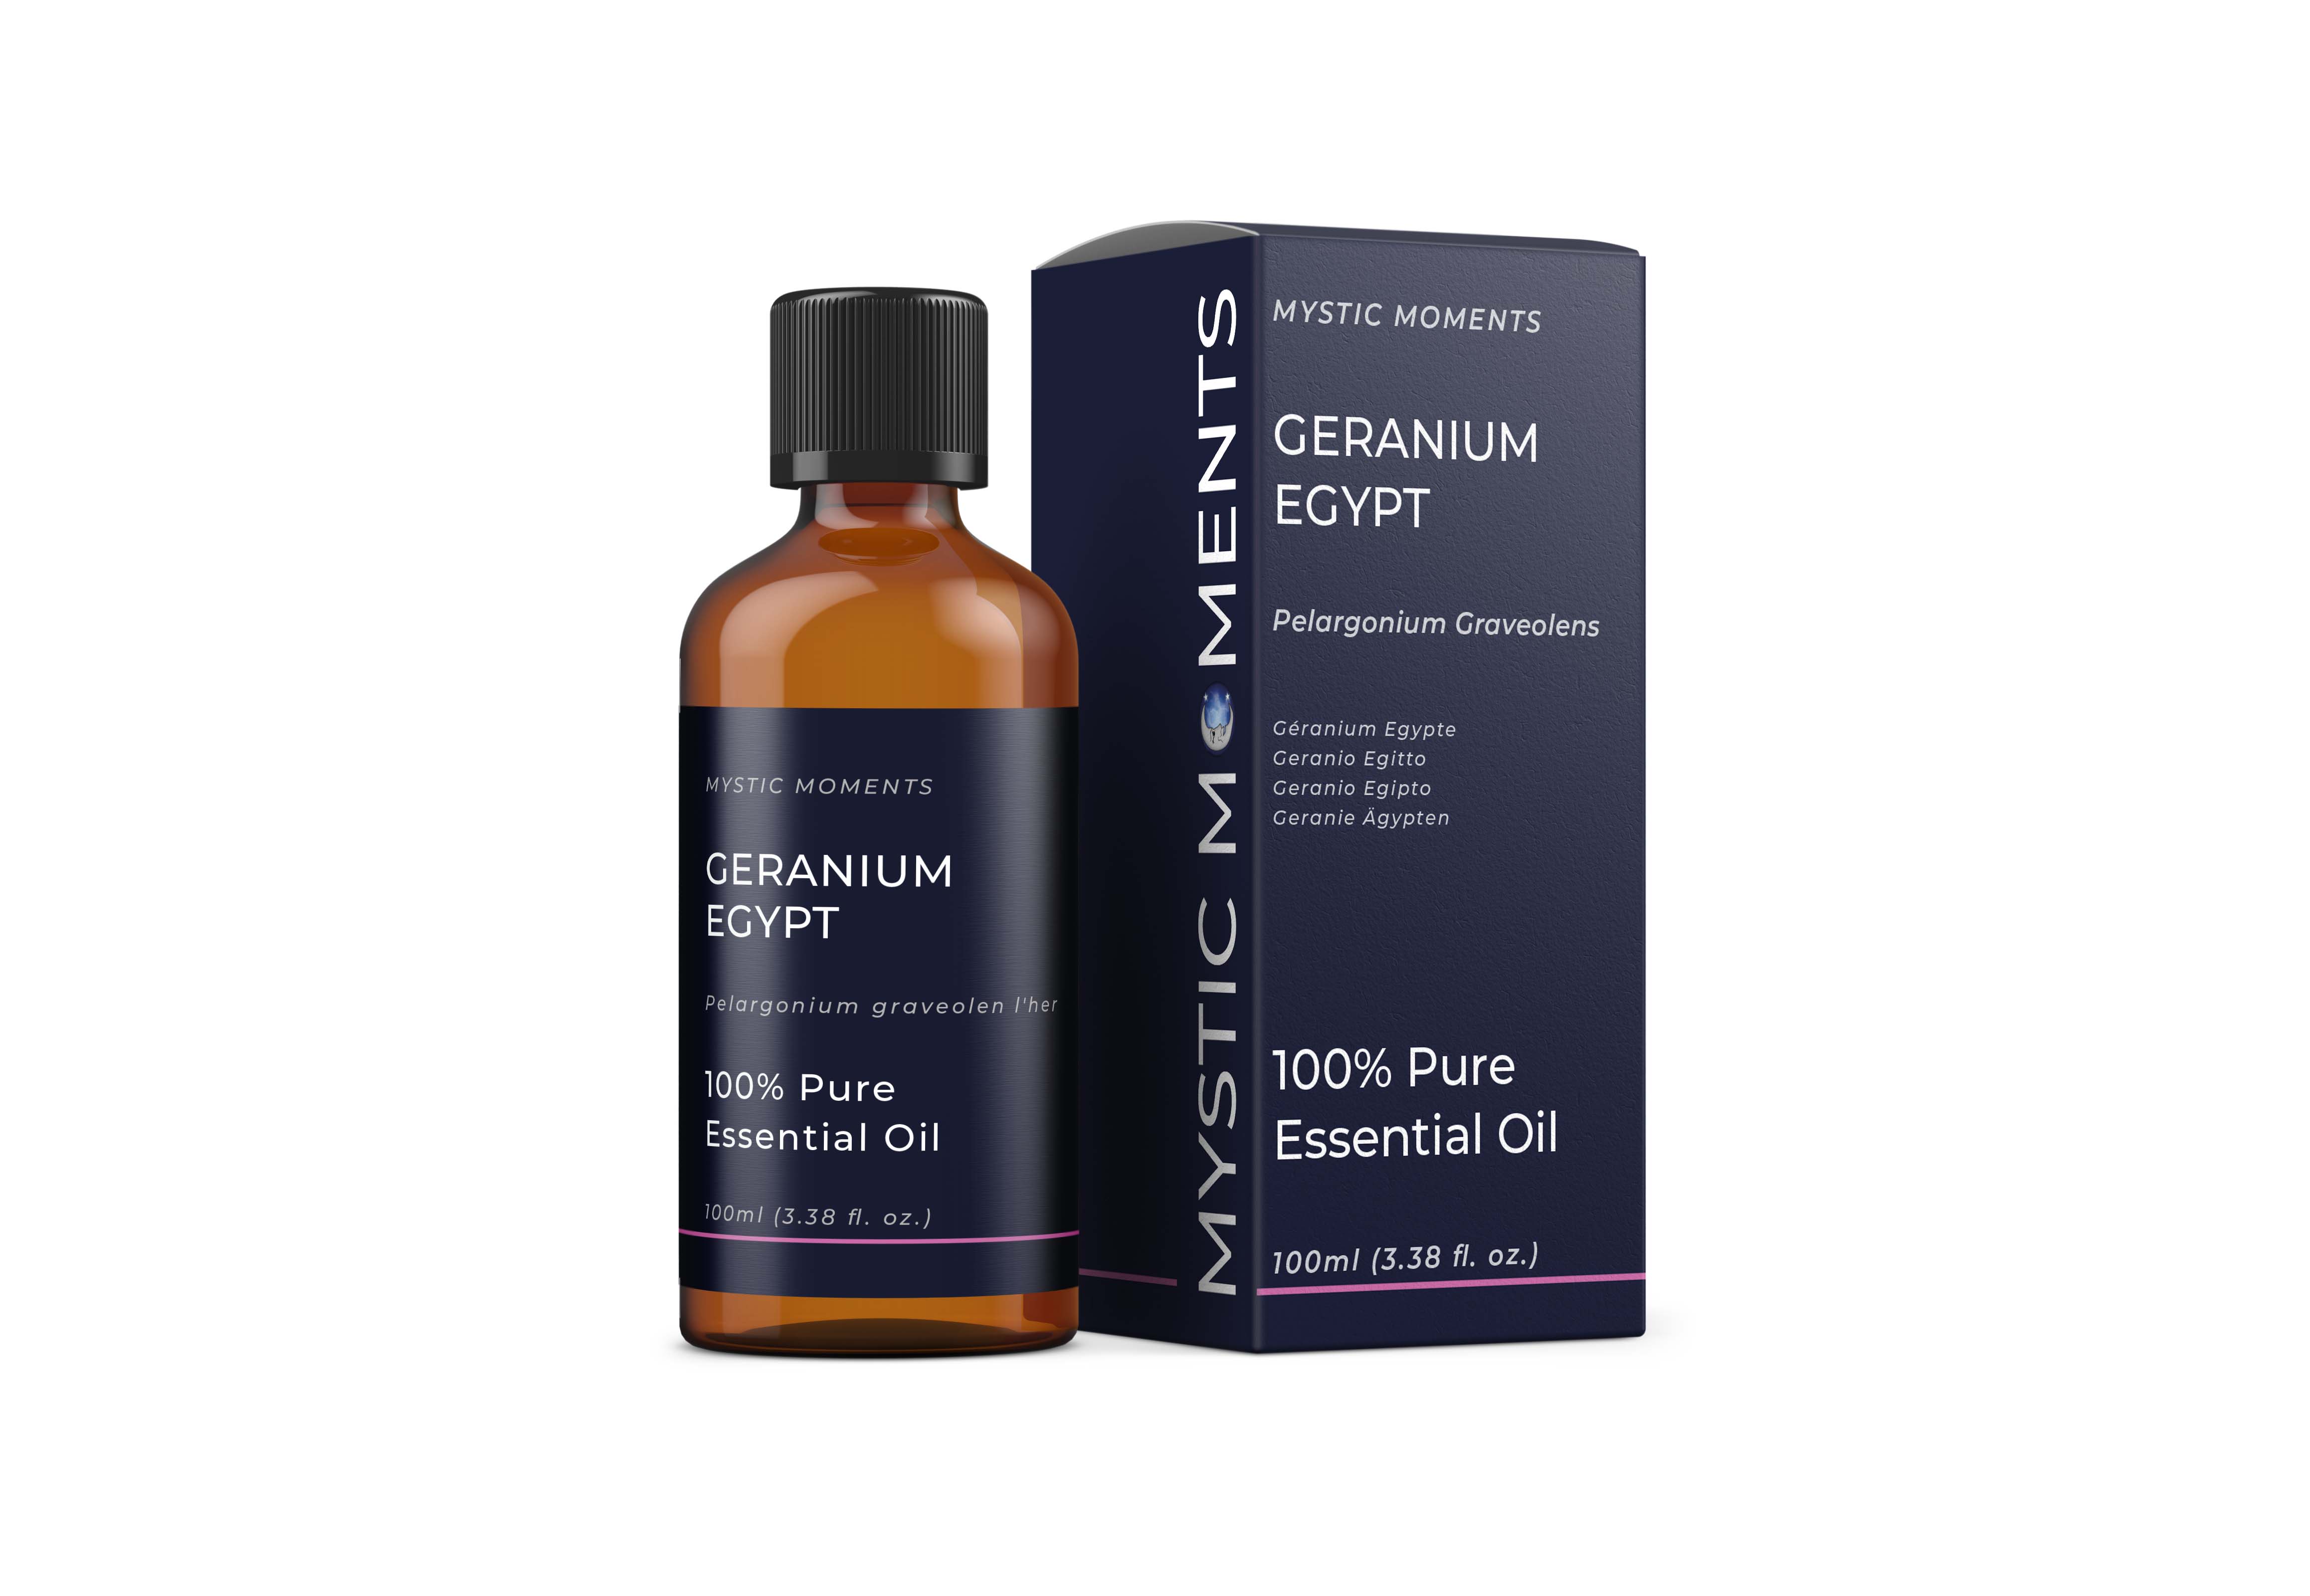 Geranium Egypt Essential Oil